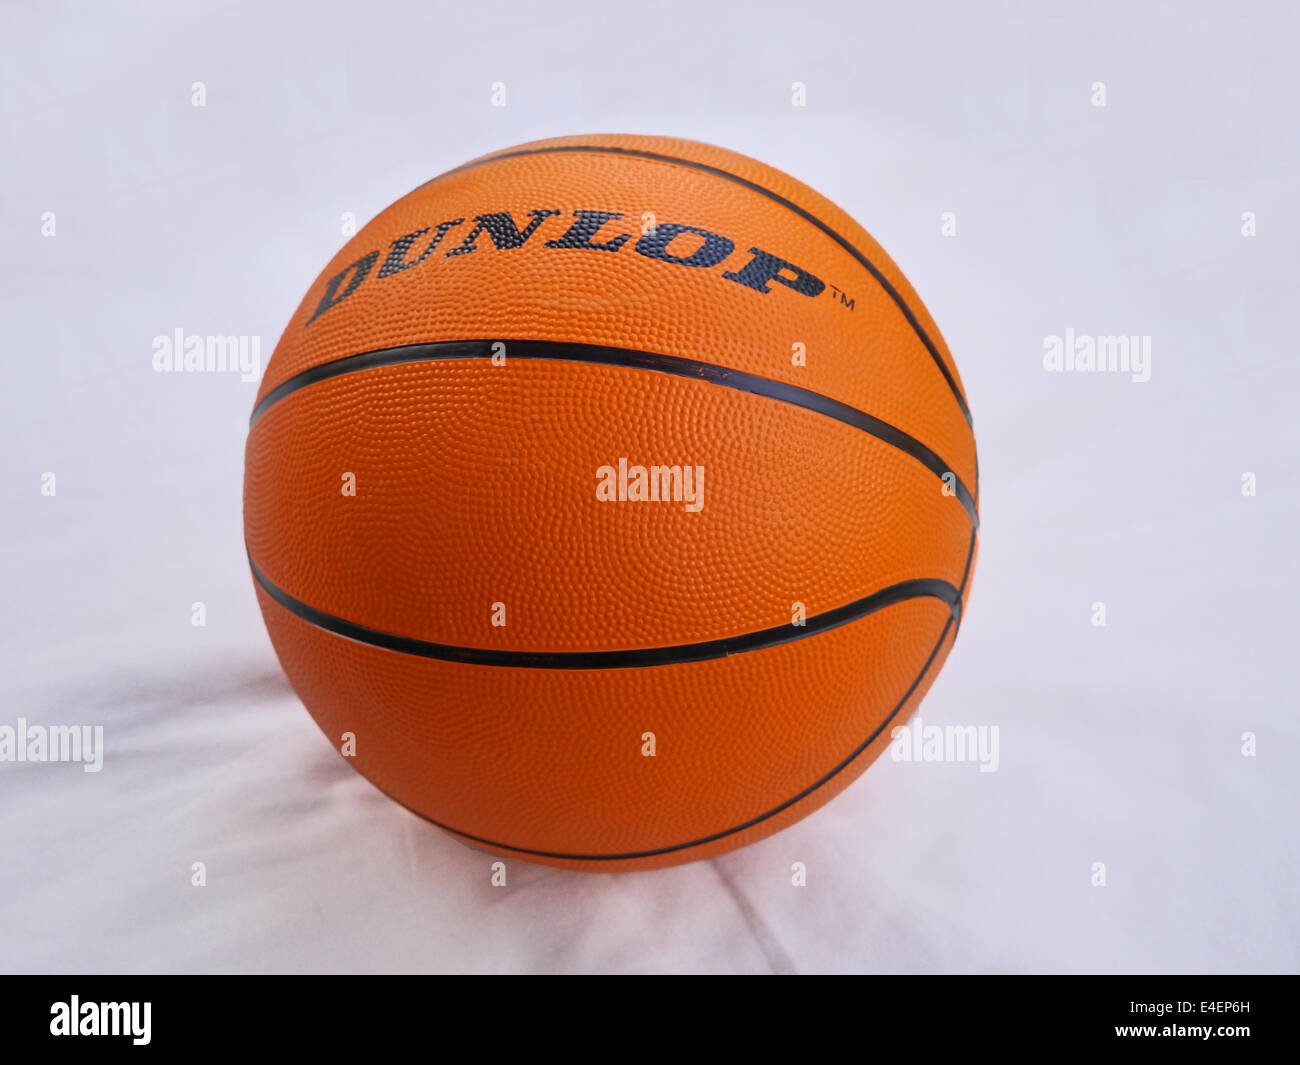 An orange basketball on a plain white background Stock Photo